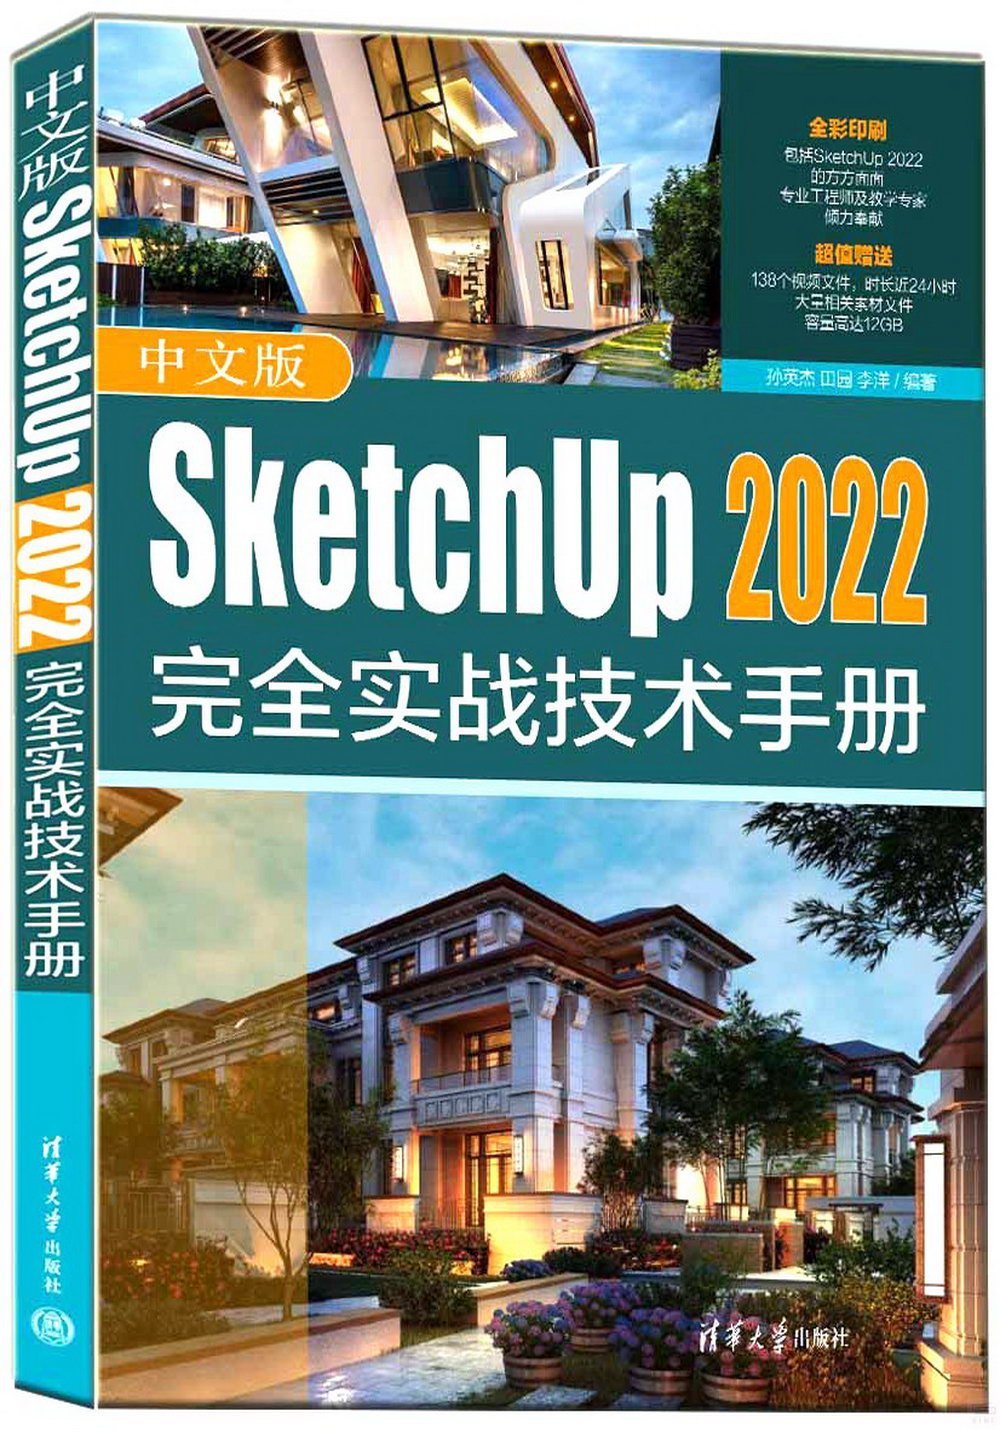 中文版SketchUp 2022完全實戰技術手冊